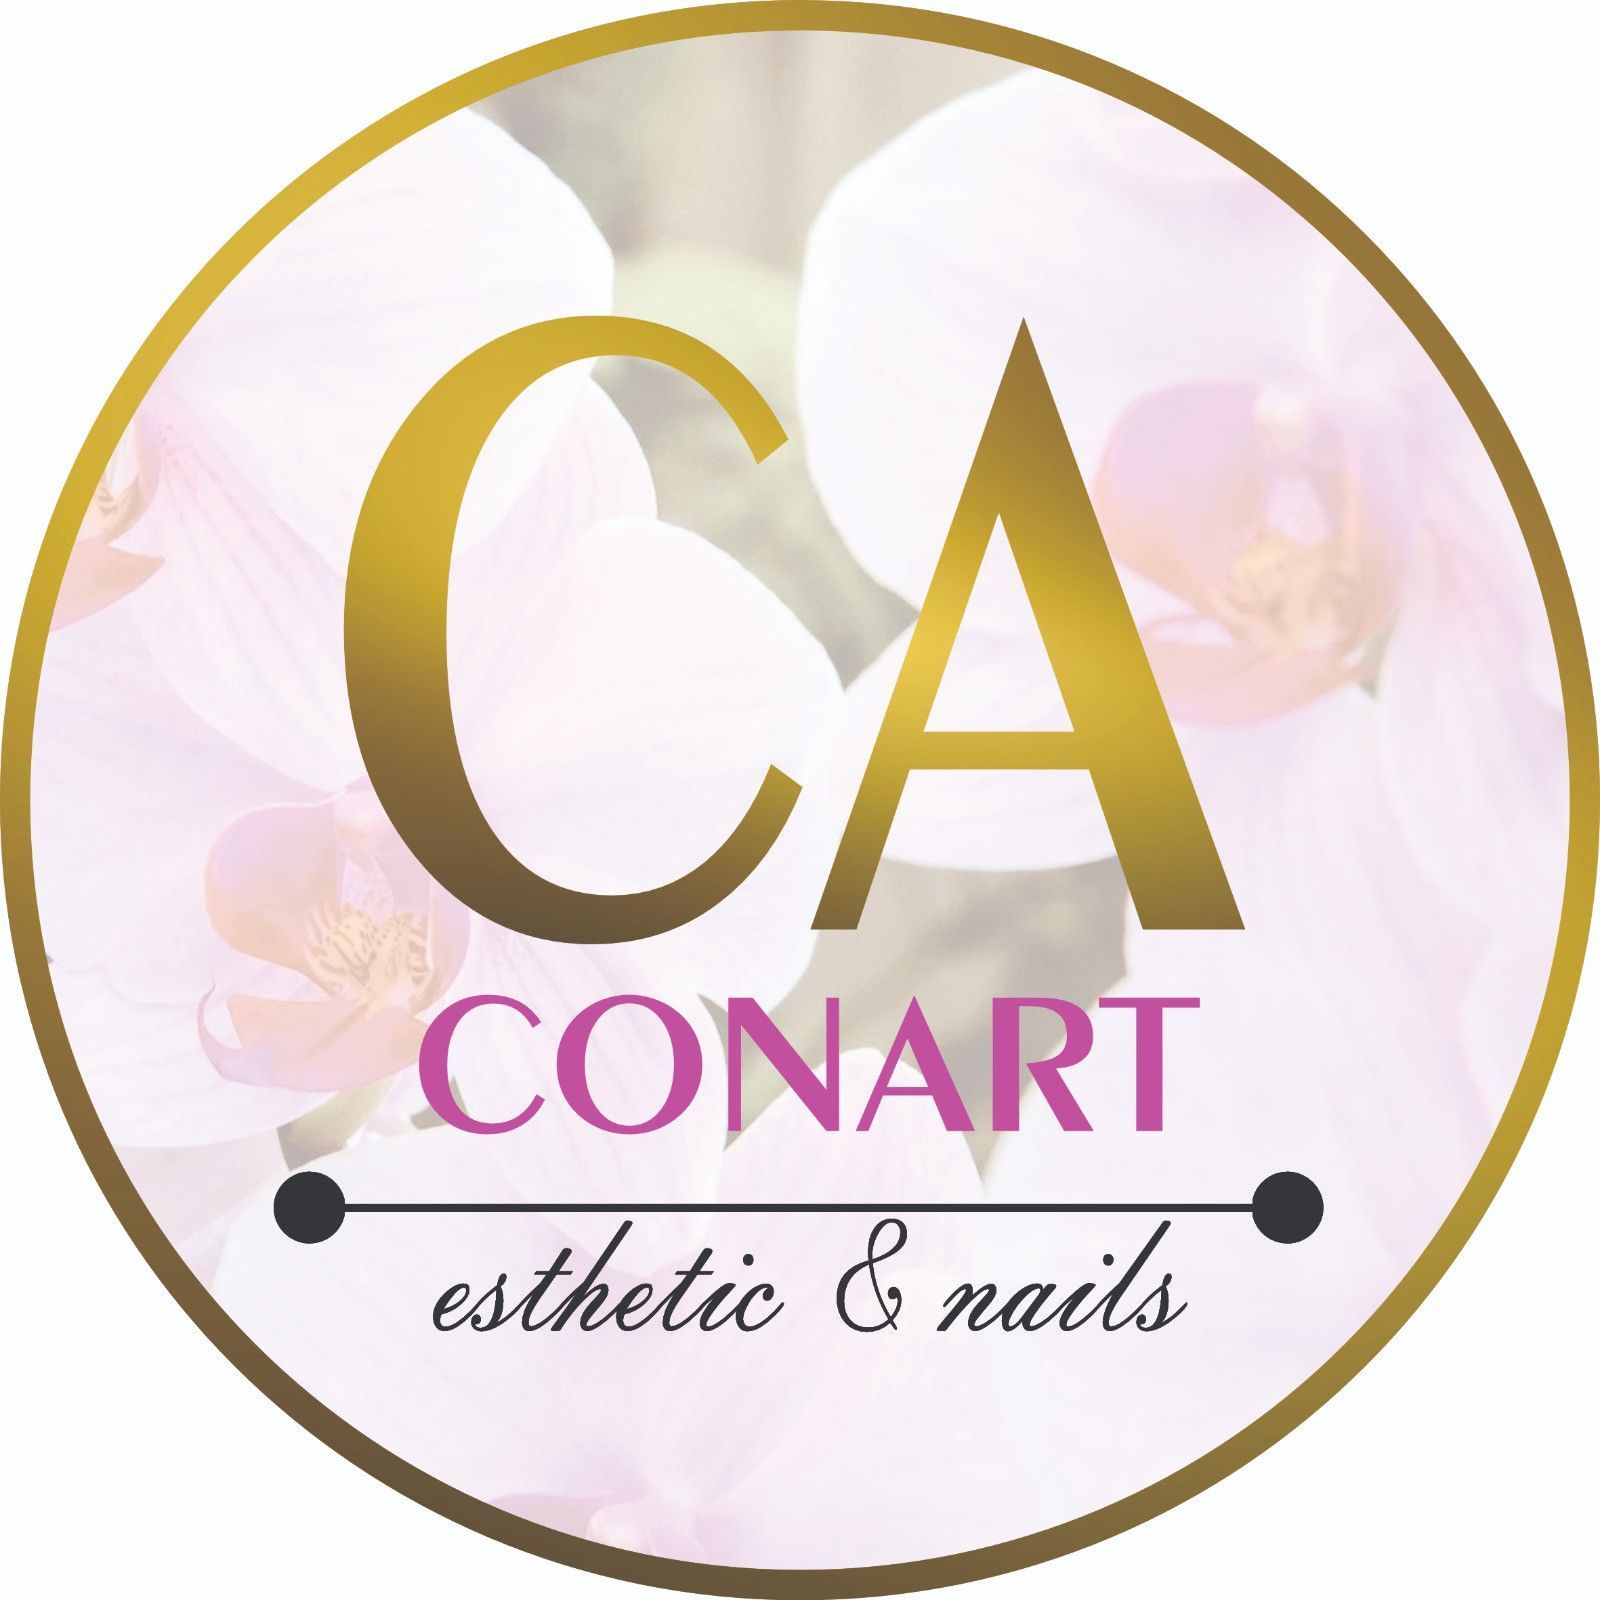 CONART esthetic & nails, Carrer del Mestre Serradesanferm, 9-11, Local 7, 08032, Barcelona